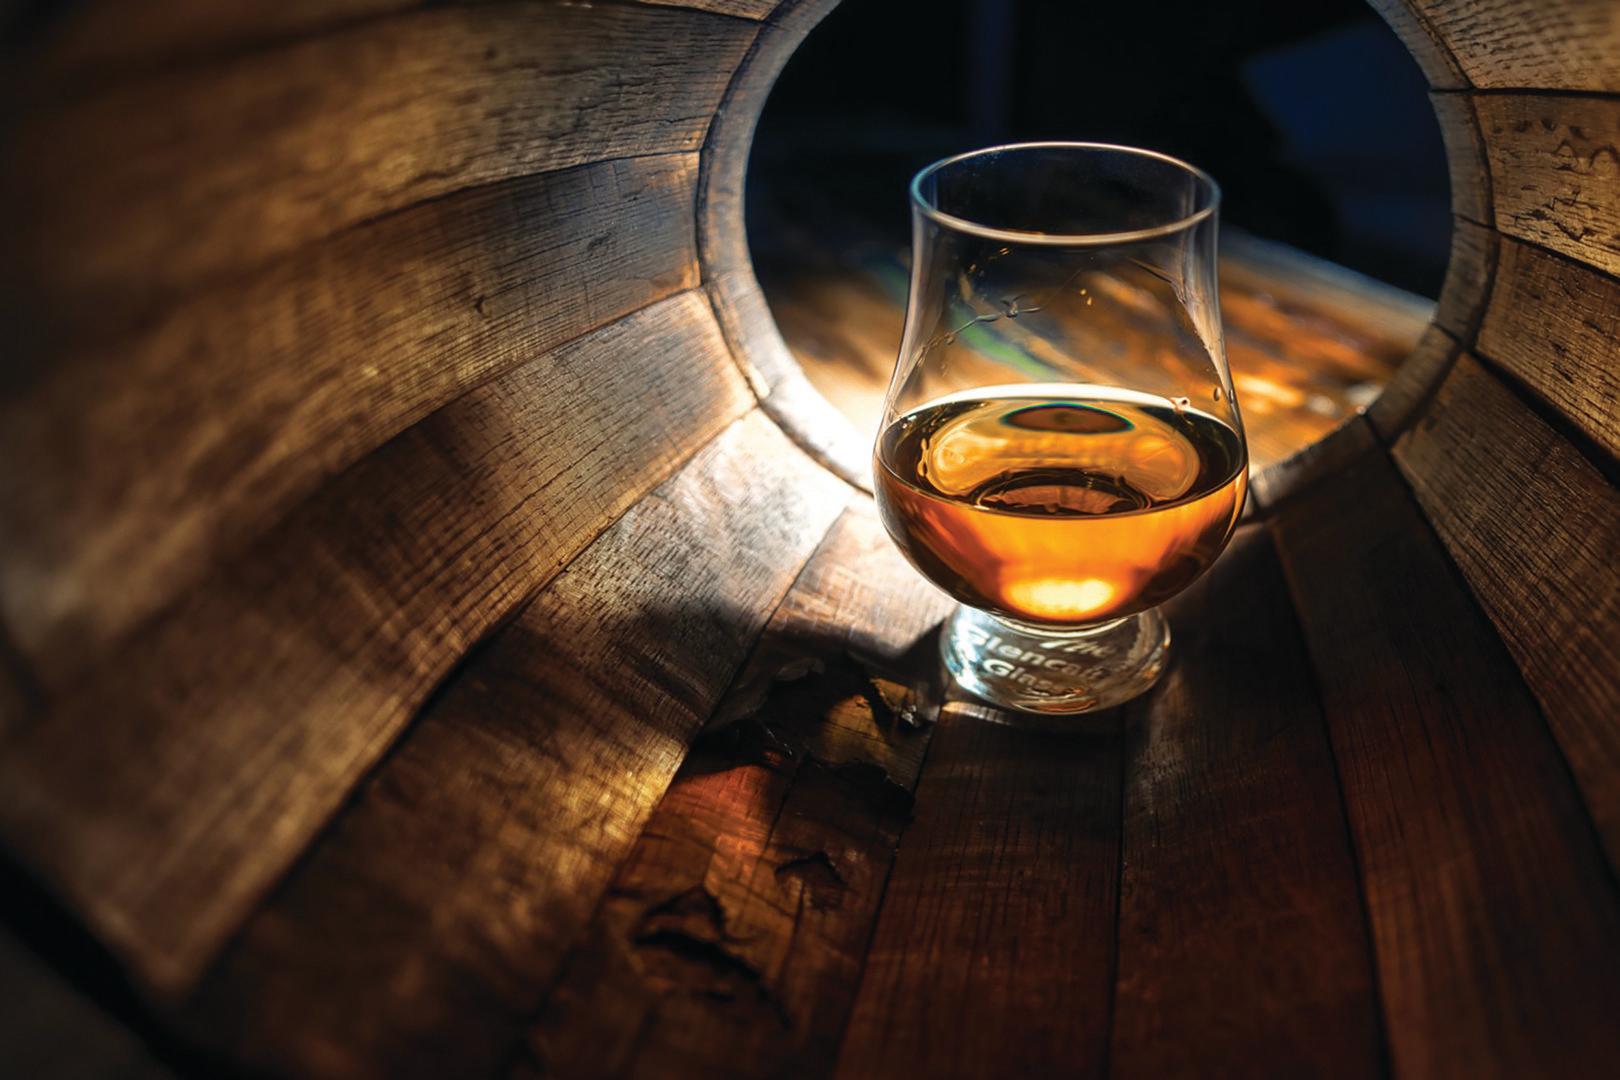 珍稀日本威士忌價值媲美黃金 - WineNow HK 專欄文章